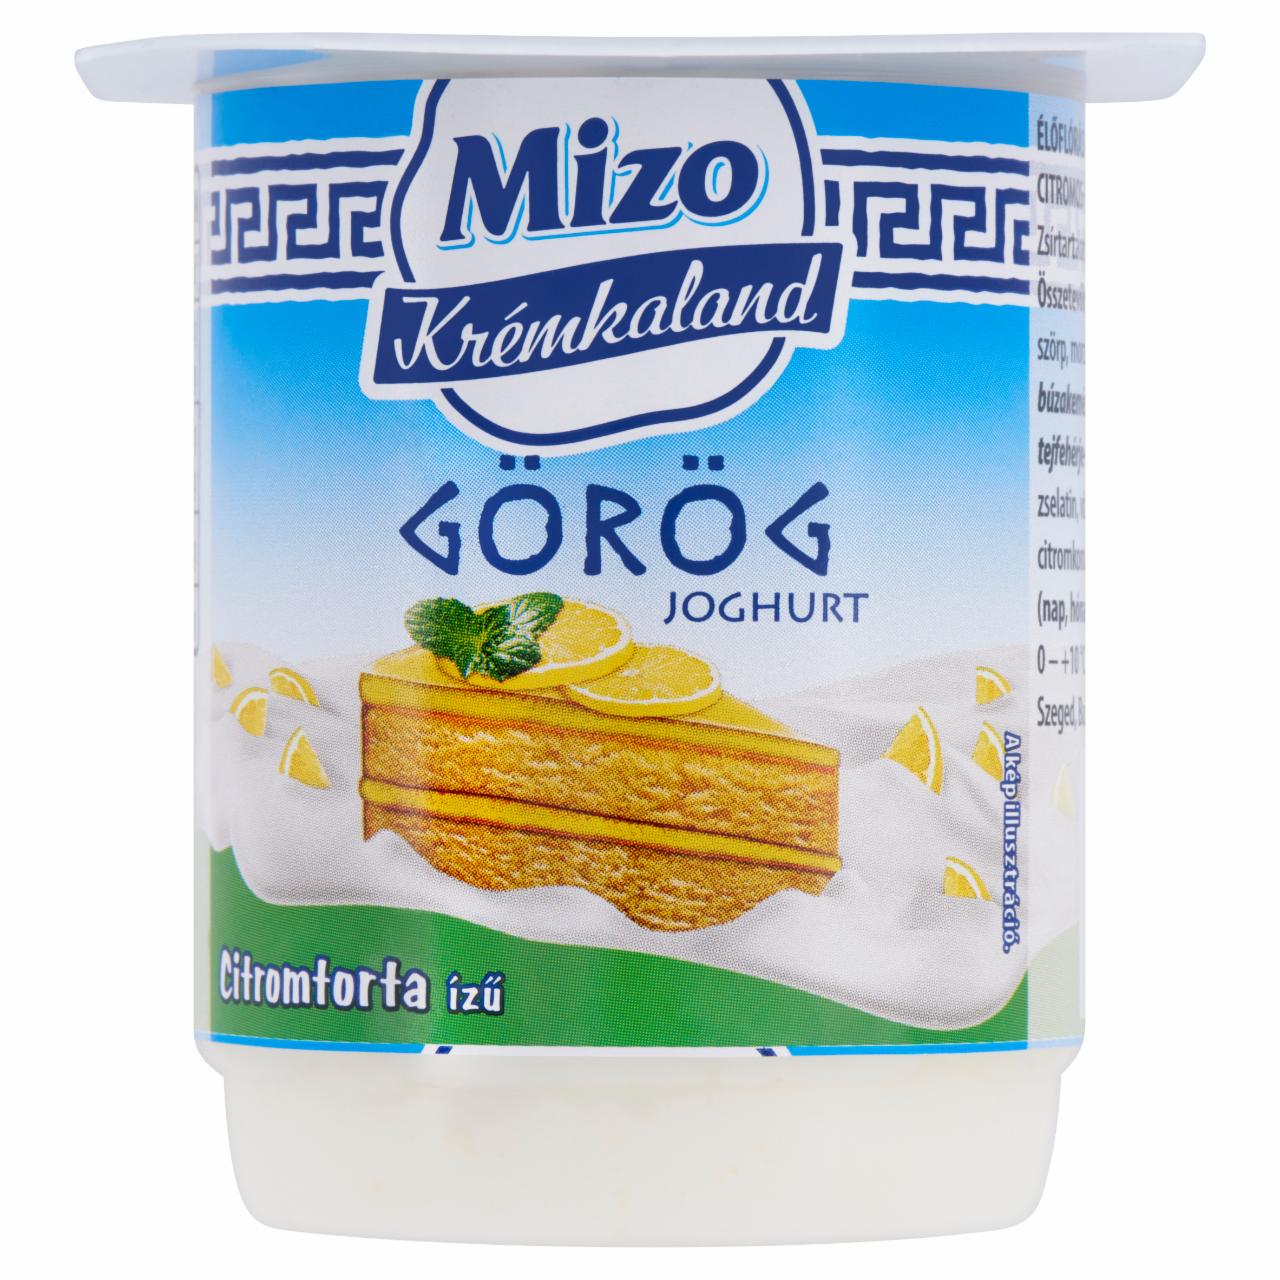 Képek - Mizo Krémkaland élőflórás citromtorta ízű citromos-piskótás görög joghurt 125 g